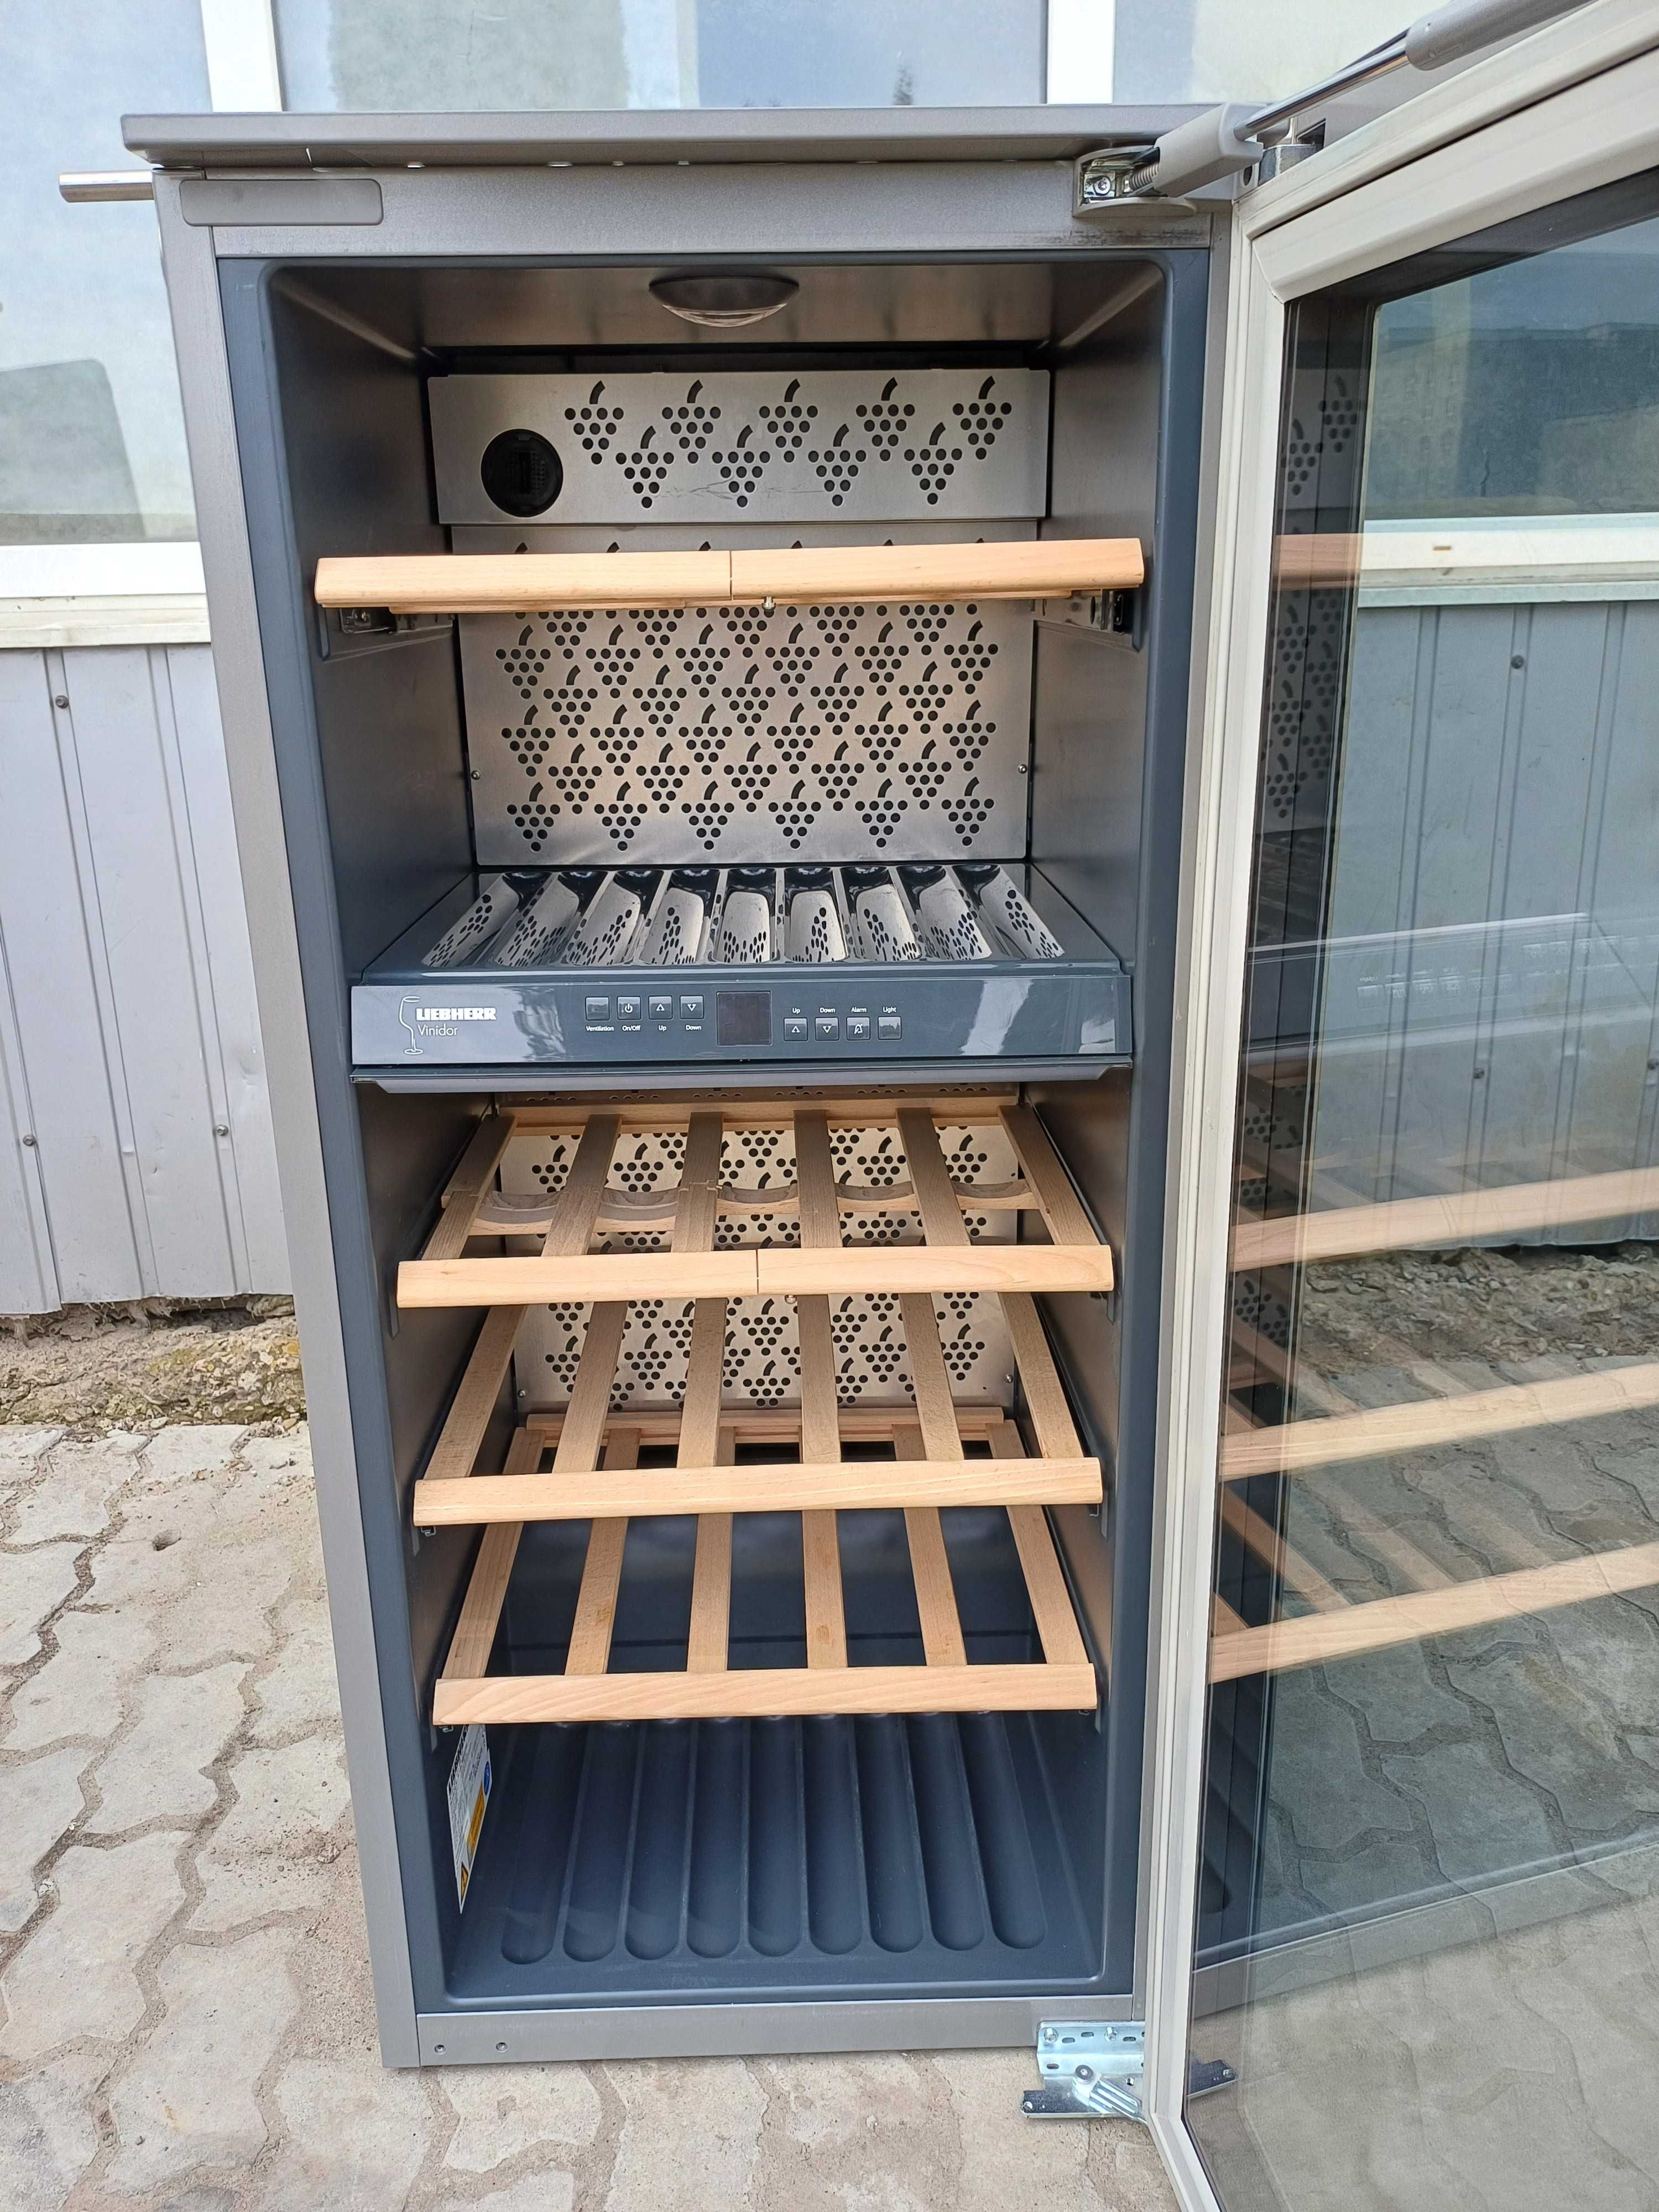 Вбудована винна шафа Liebherr WTEes 2053 холодильник для вина Лібхер